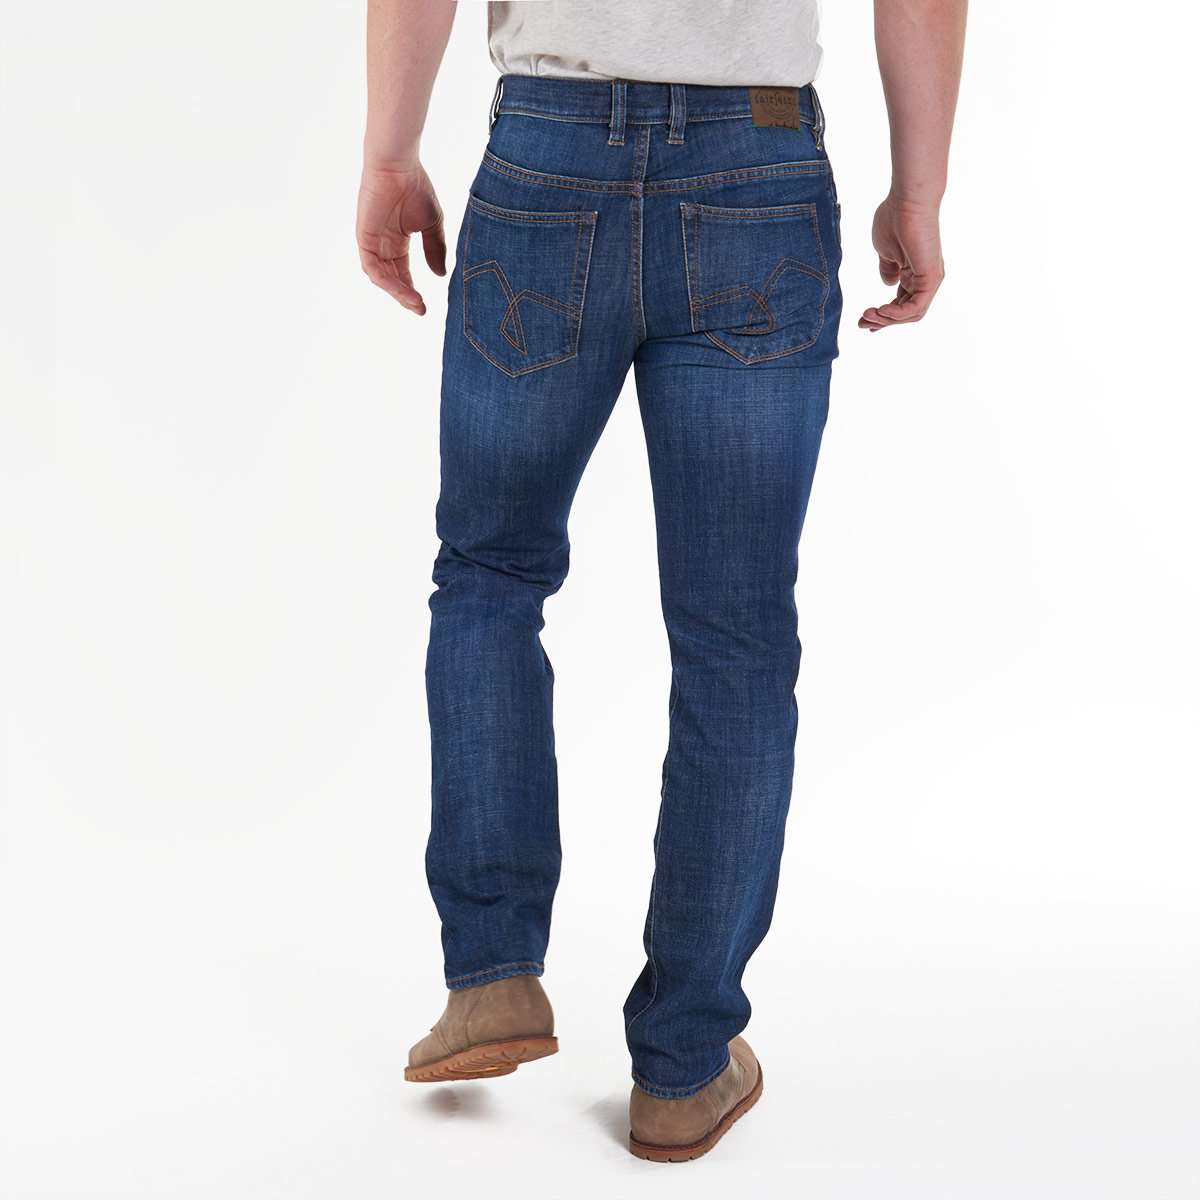 Herren-Jeans von fairjeans: Bio-Baumwolle, körperbetonte Slim Fit Passform, leichter Used-Look